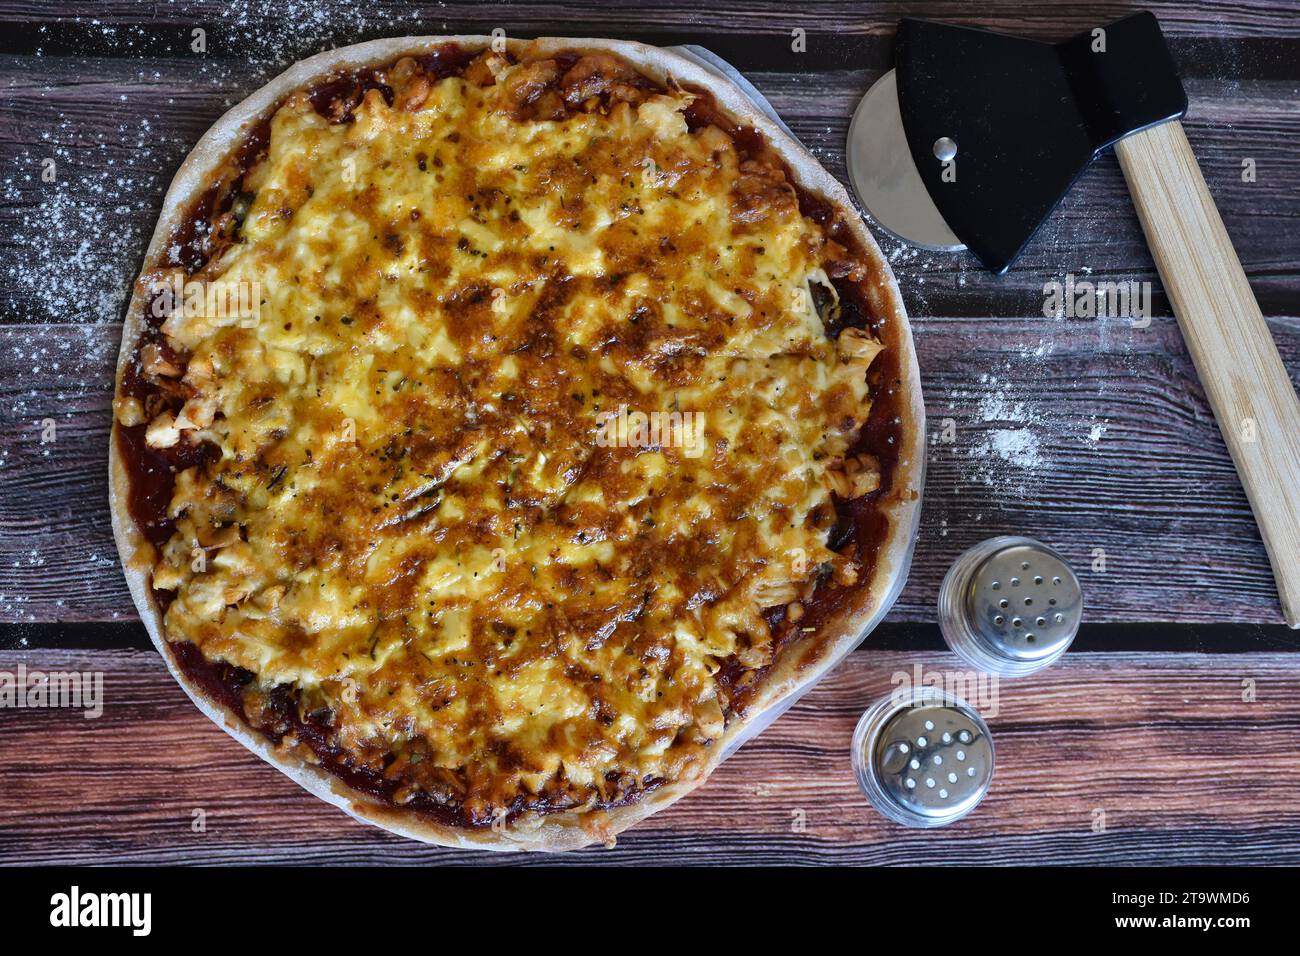 Frisch gebackene, hausgemachte Pizza, serviert auf einem bemehlten Holztisch. Leckere Hühnerpizza mit Käse. Pizzaschneider, Salz- und Pfefferstreuer. Draufsicht. Stockfoto